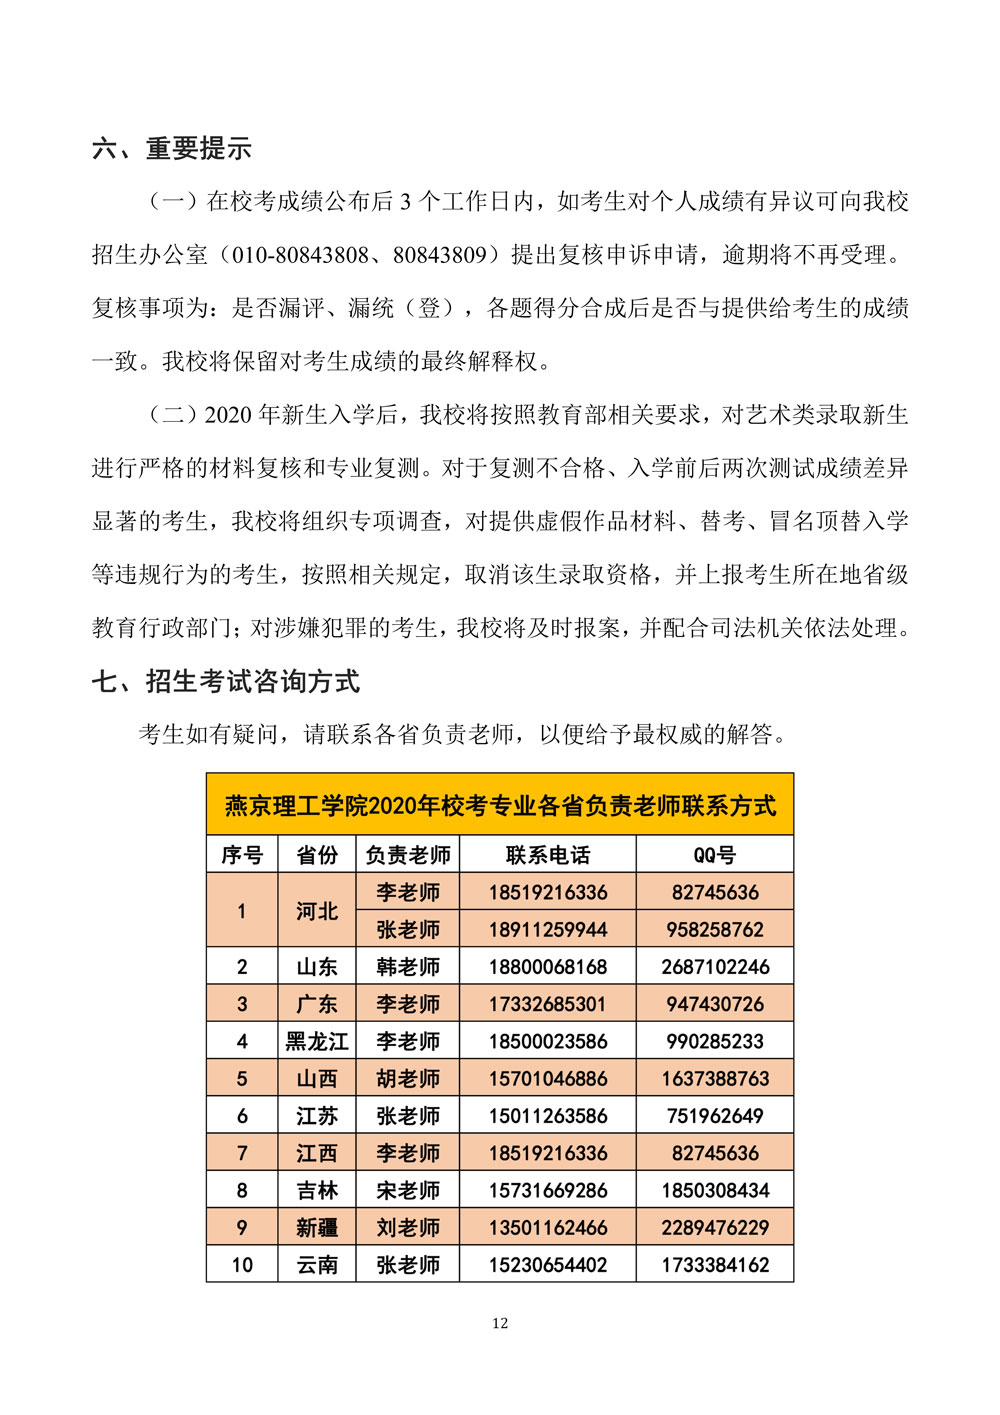 燕京理工学院关于调整2020年艺术类专业校考的公告12.jpg